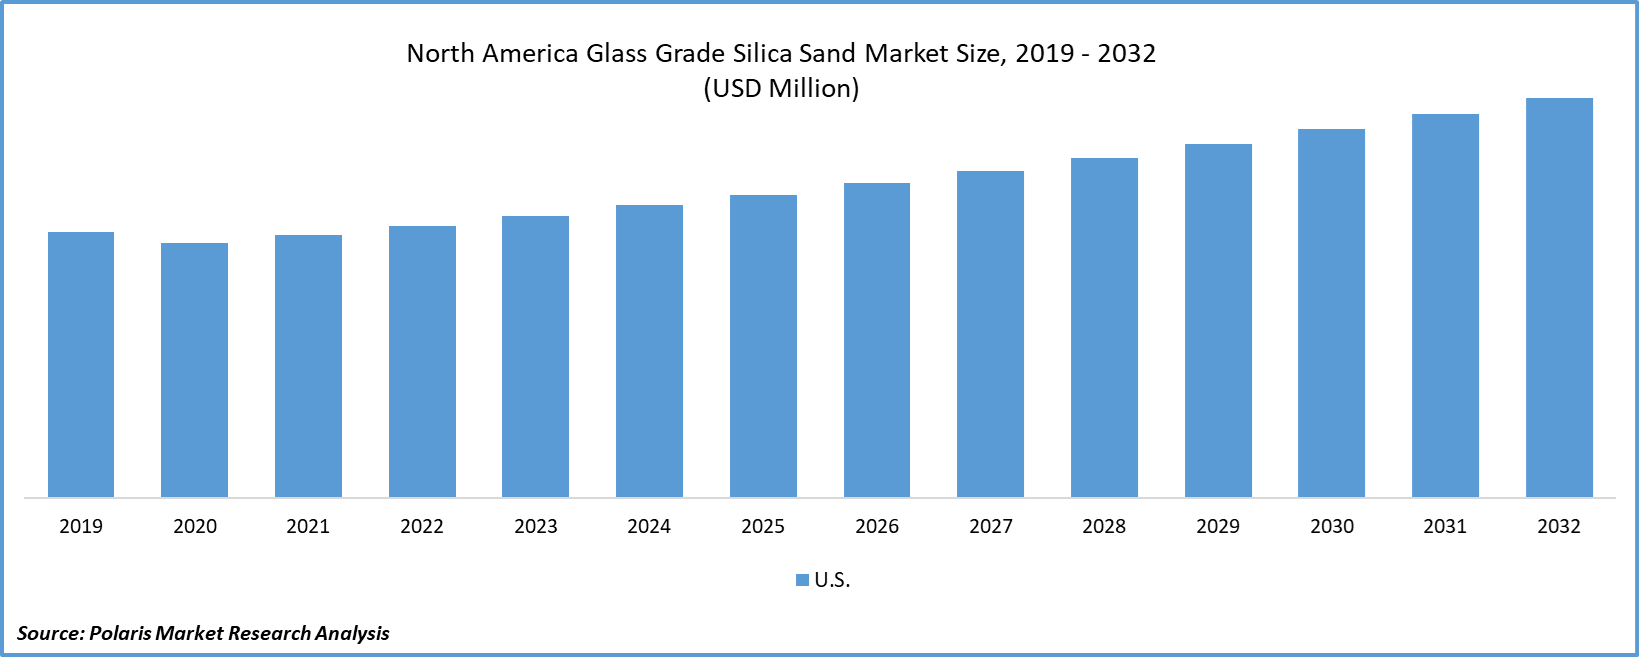 North America Glass Grade Silica Sand Market Size